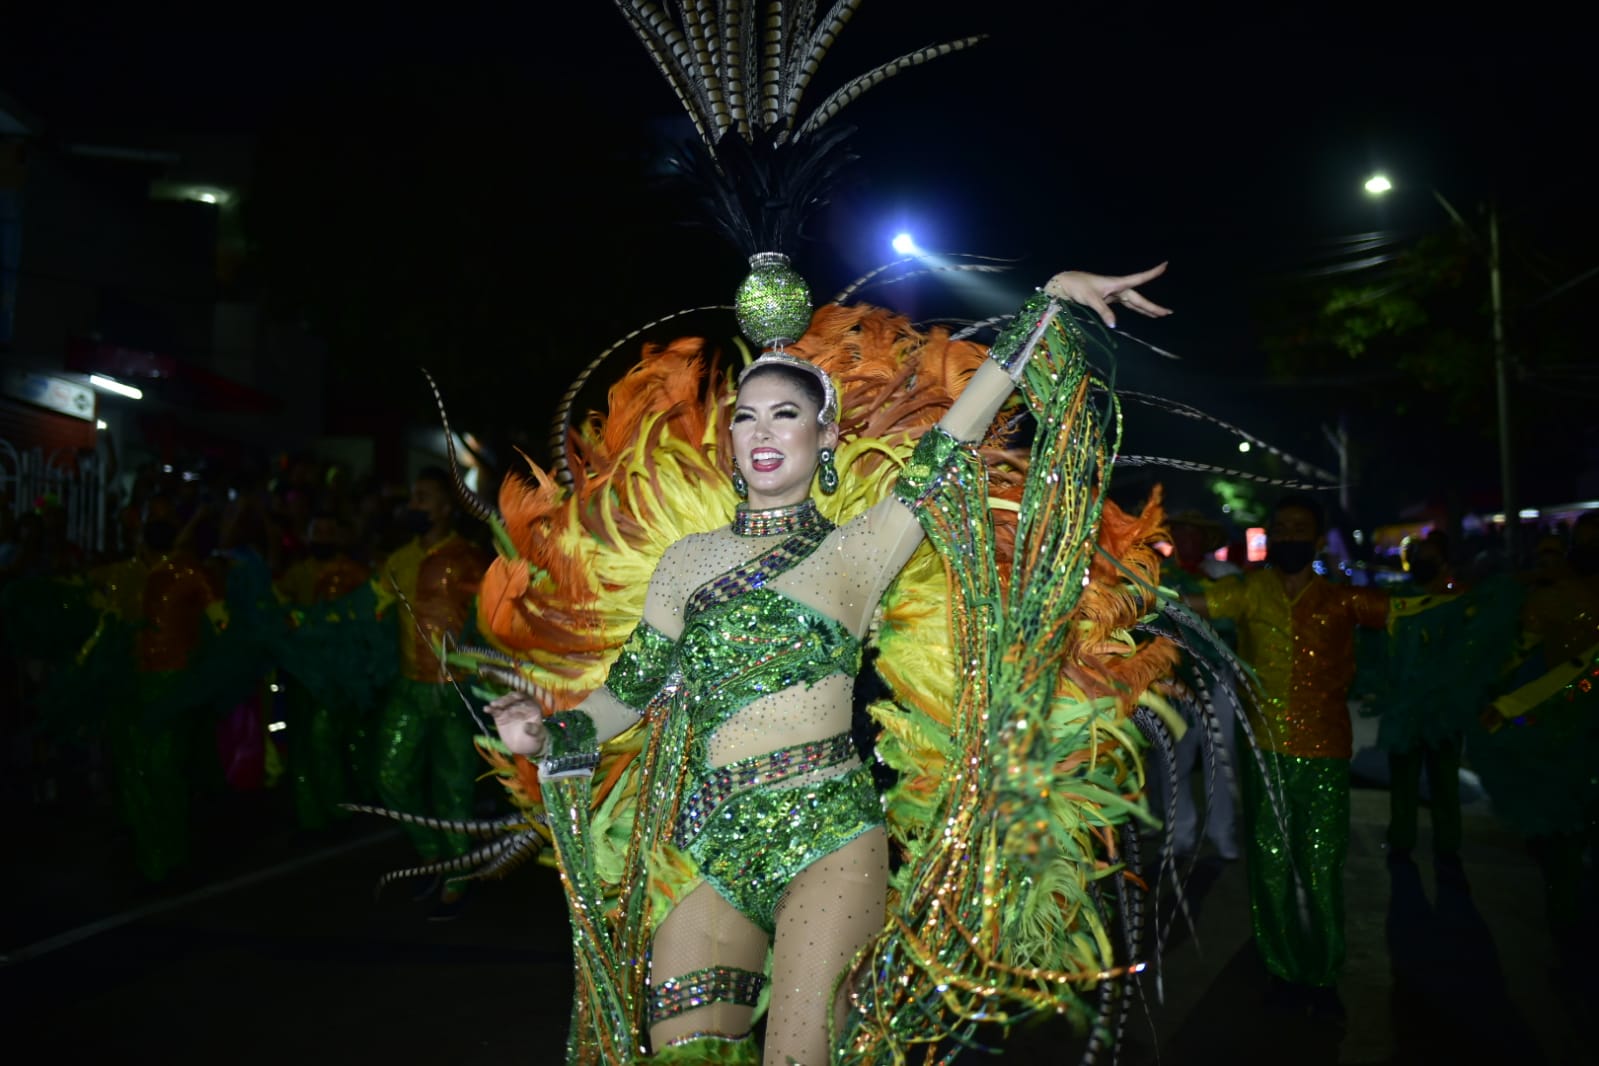 La Reina del Carnaval de Barranquilla 2022, Valeria Charris Salcedo.